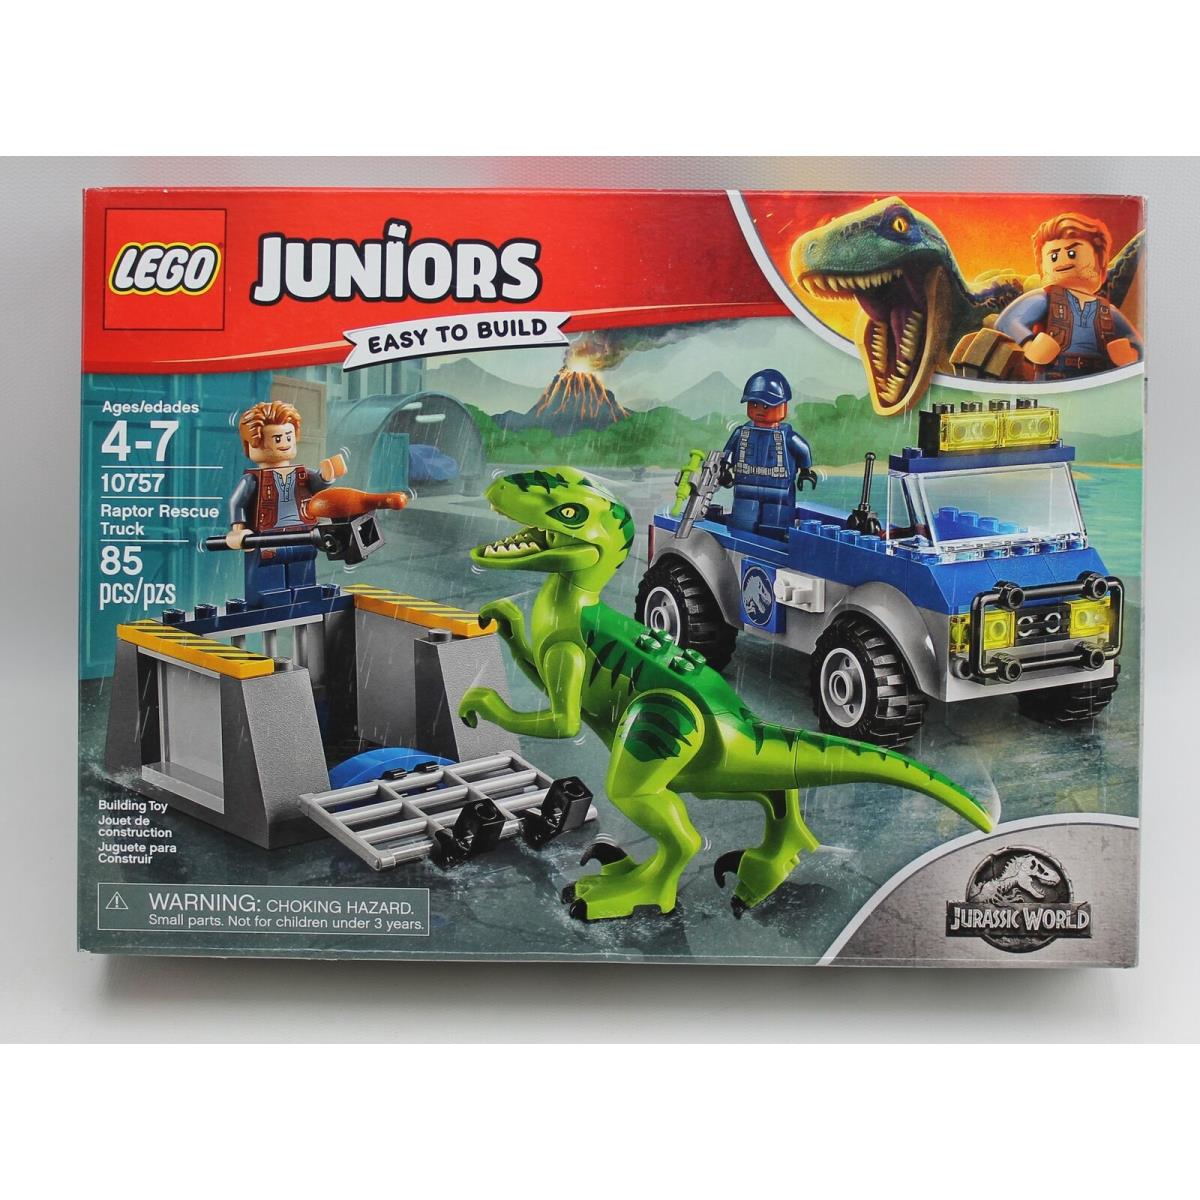 Lego Juniors Easy To Build Jurasic World Raptor Rescue World Set 10757